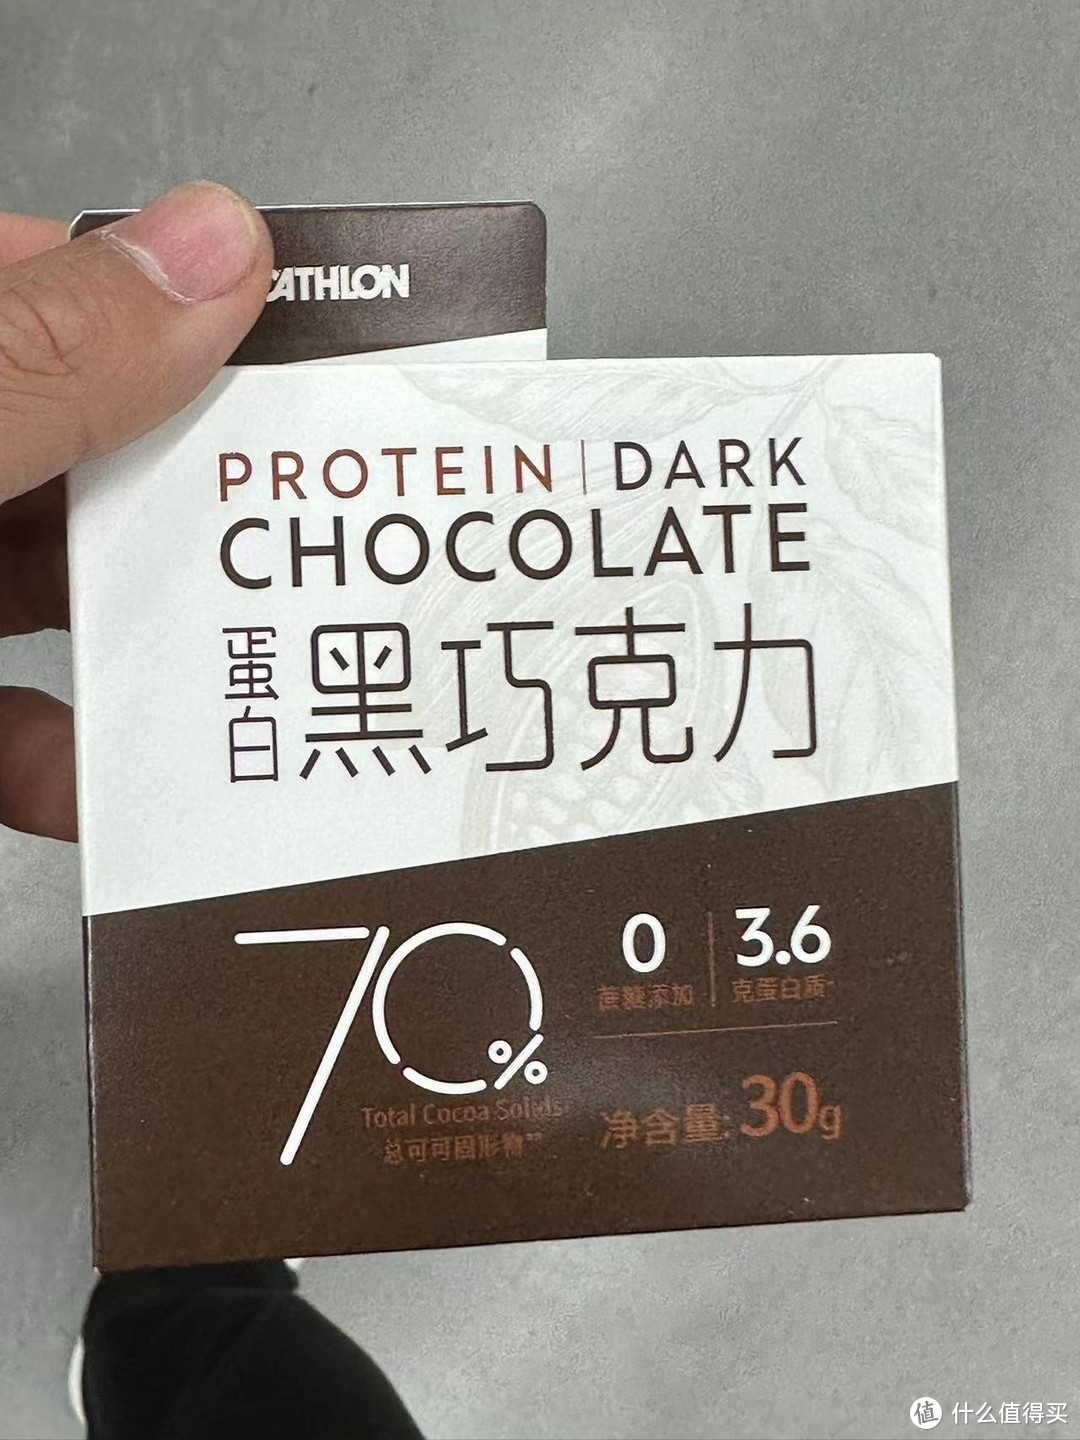 蛋白制作的巧克力感觉还可以